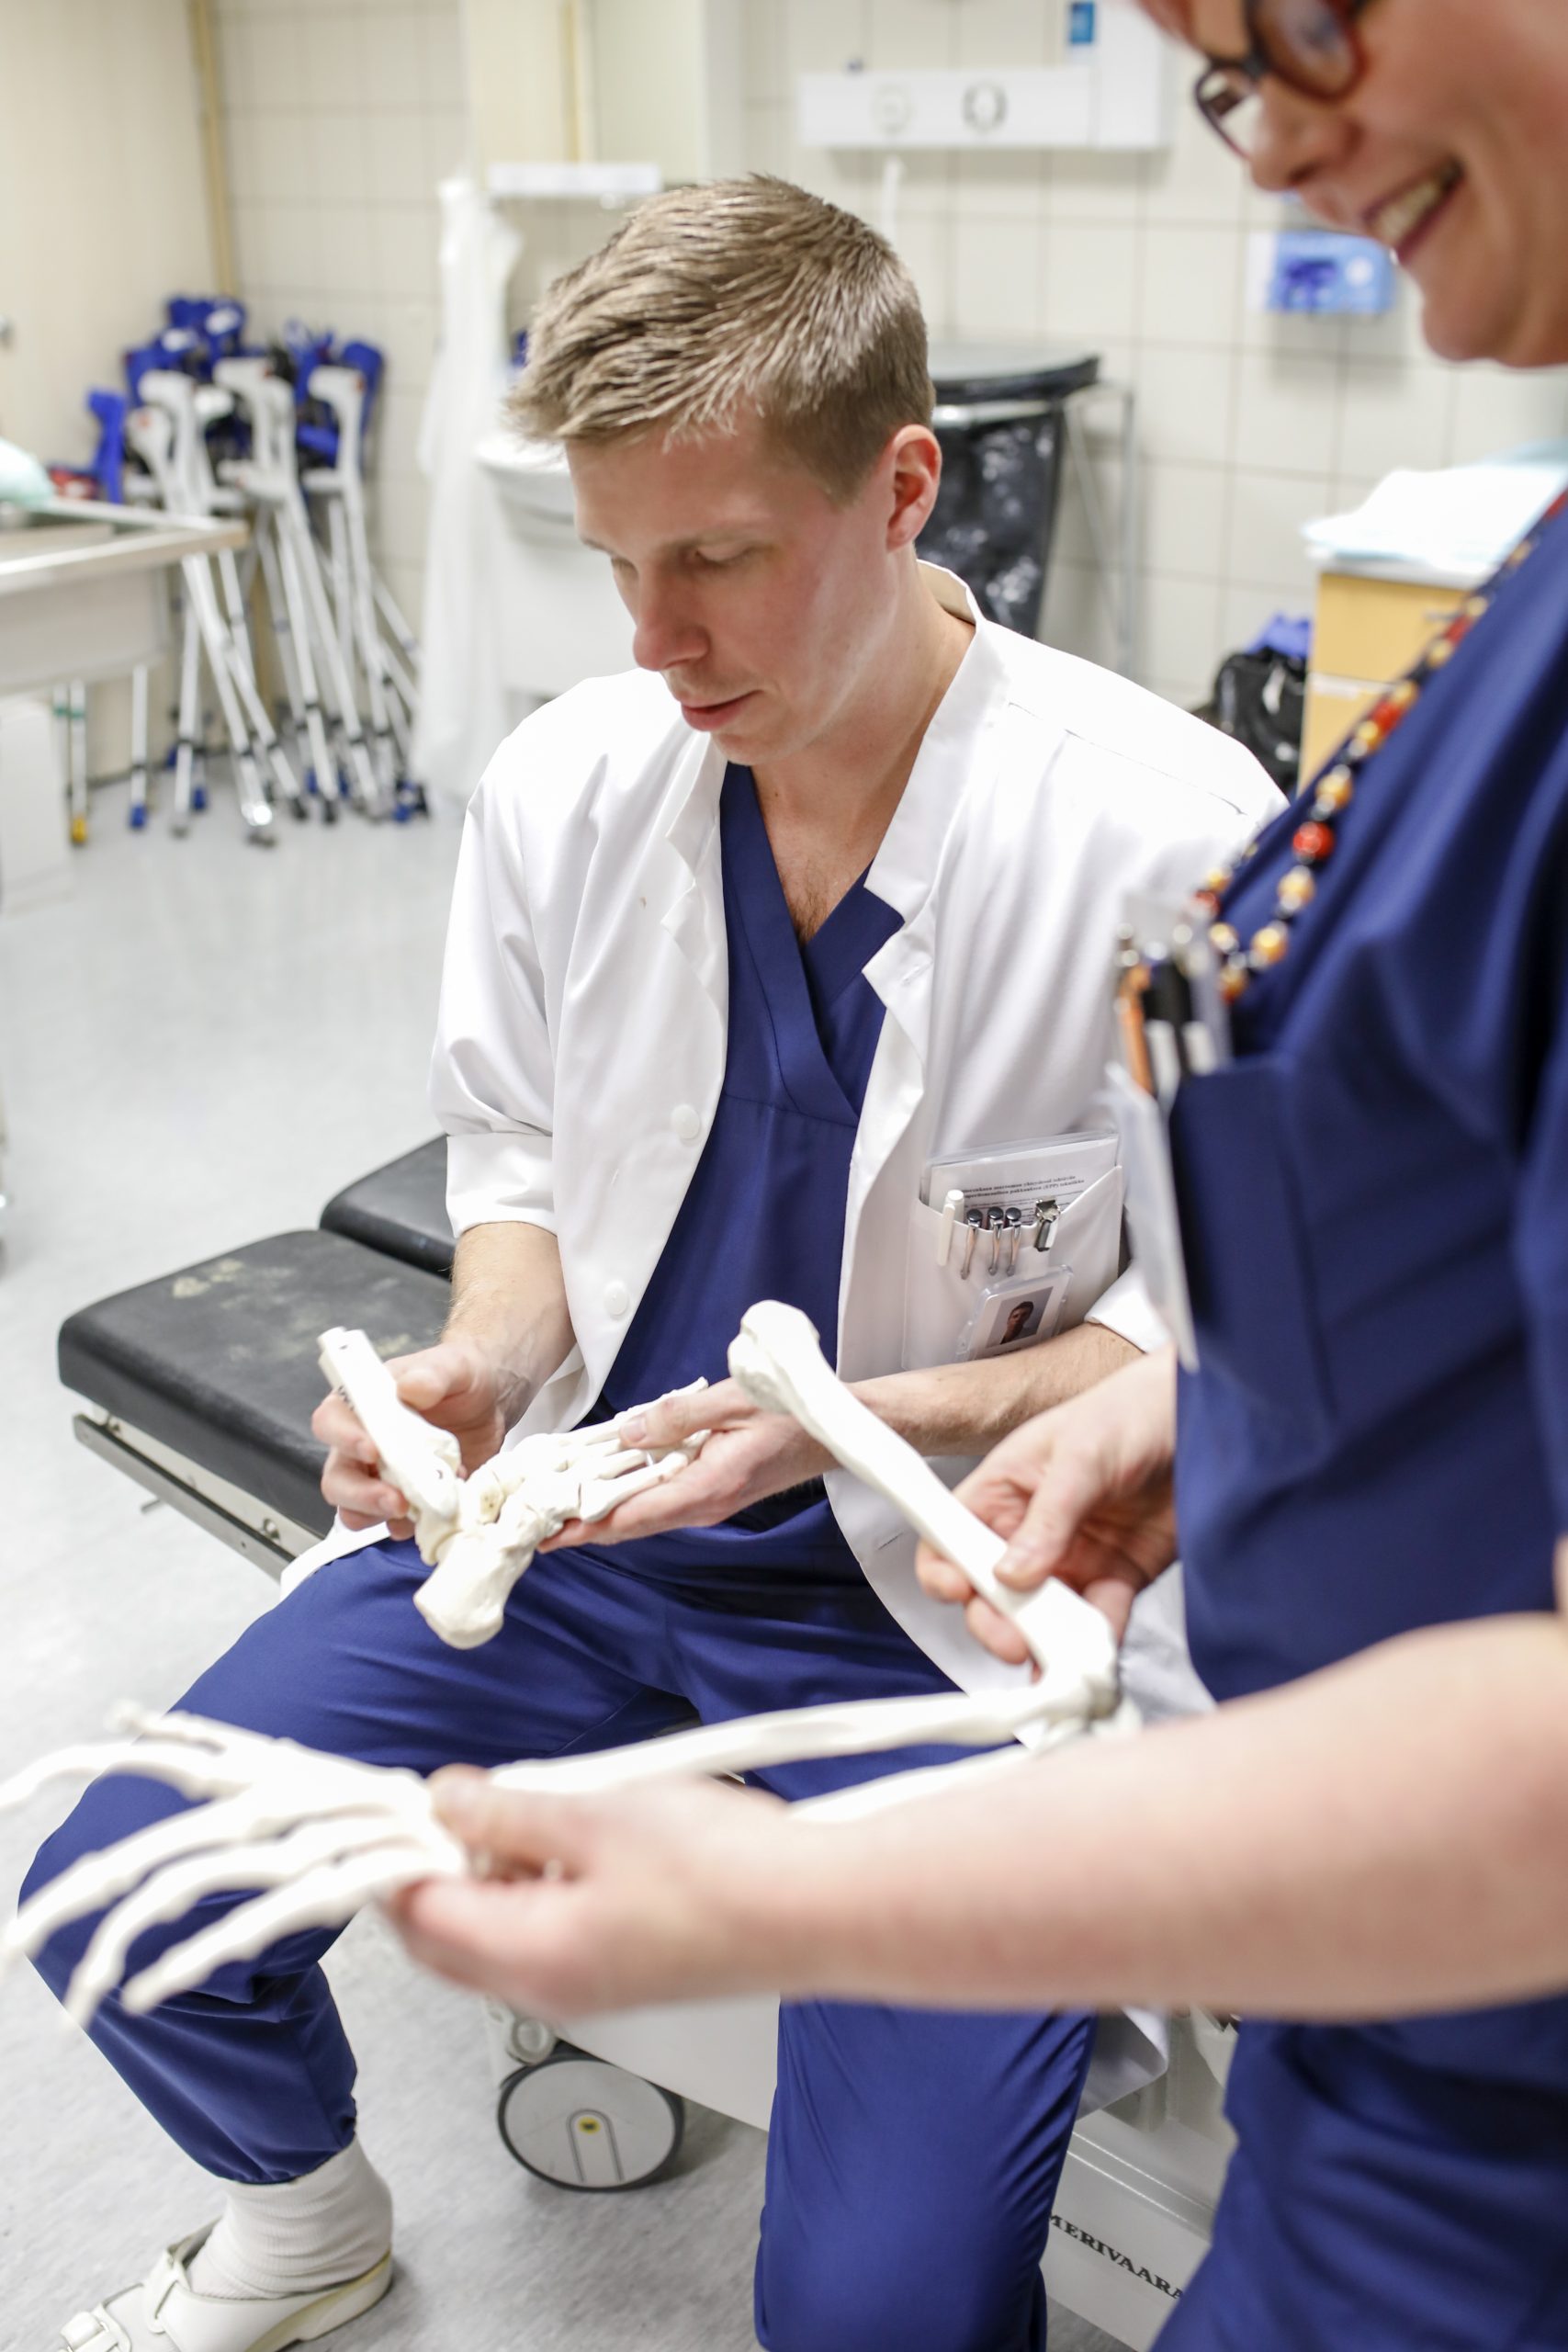 Ortopedian ylilääkäri Jussi Laurila pitää käsissään luumallia, jolla potilaalle voidaan havainnollistaa jalan rakennetta.